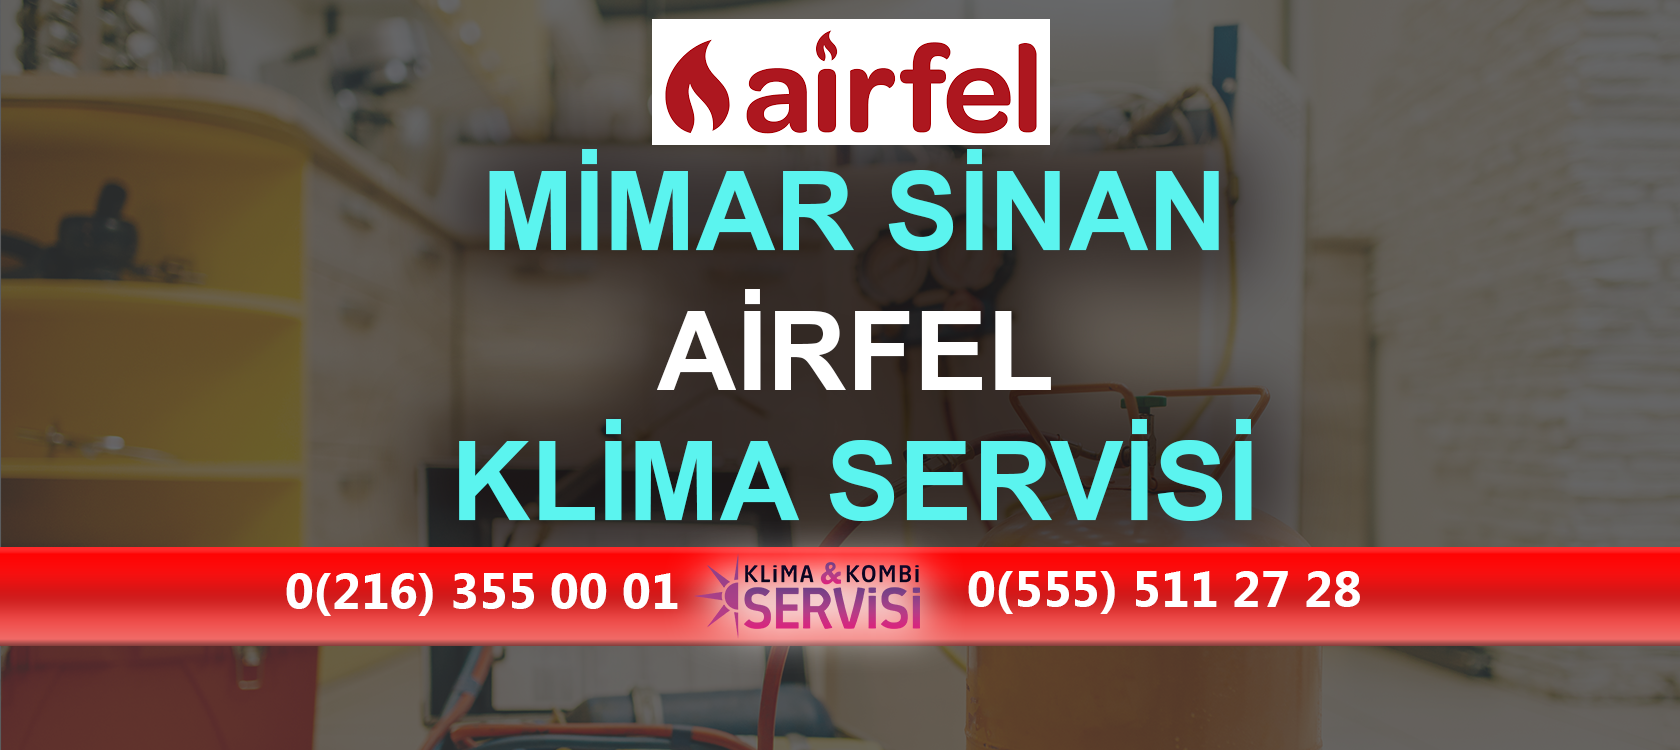 Mimar Sinan Airfel Klima Servisi